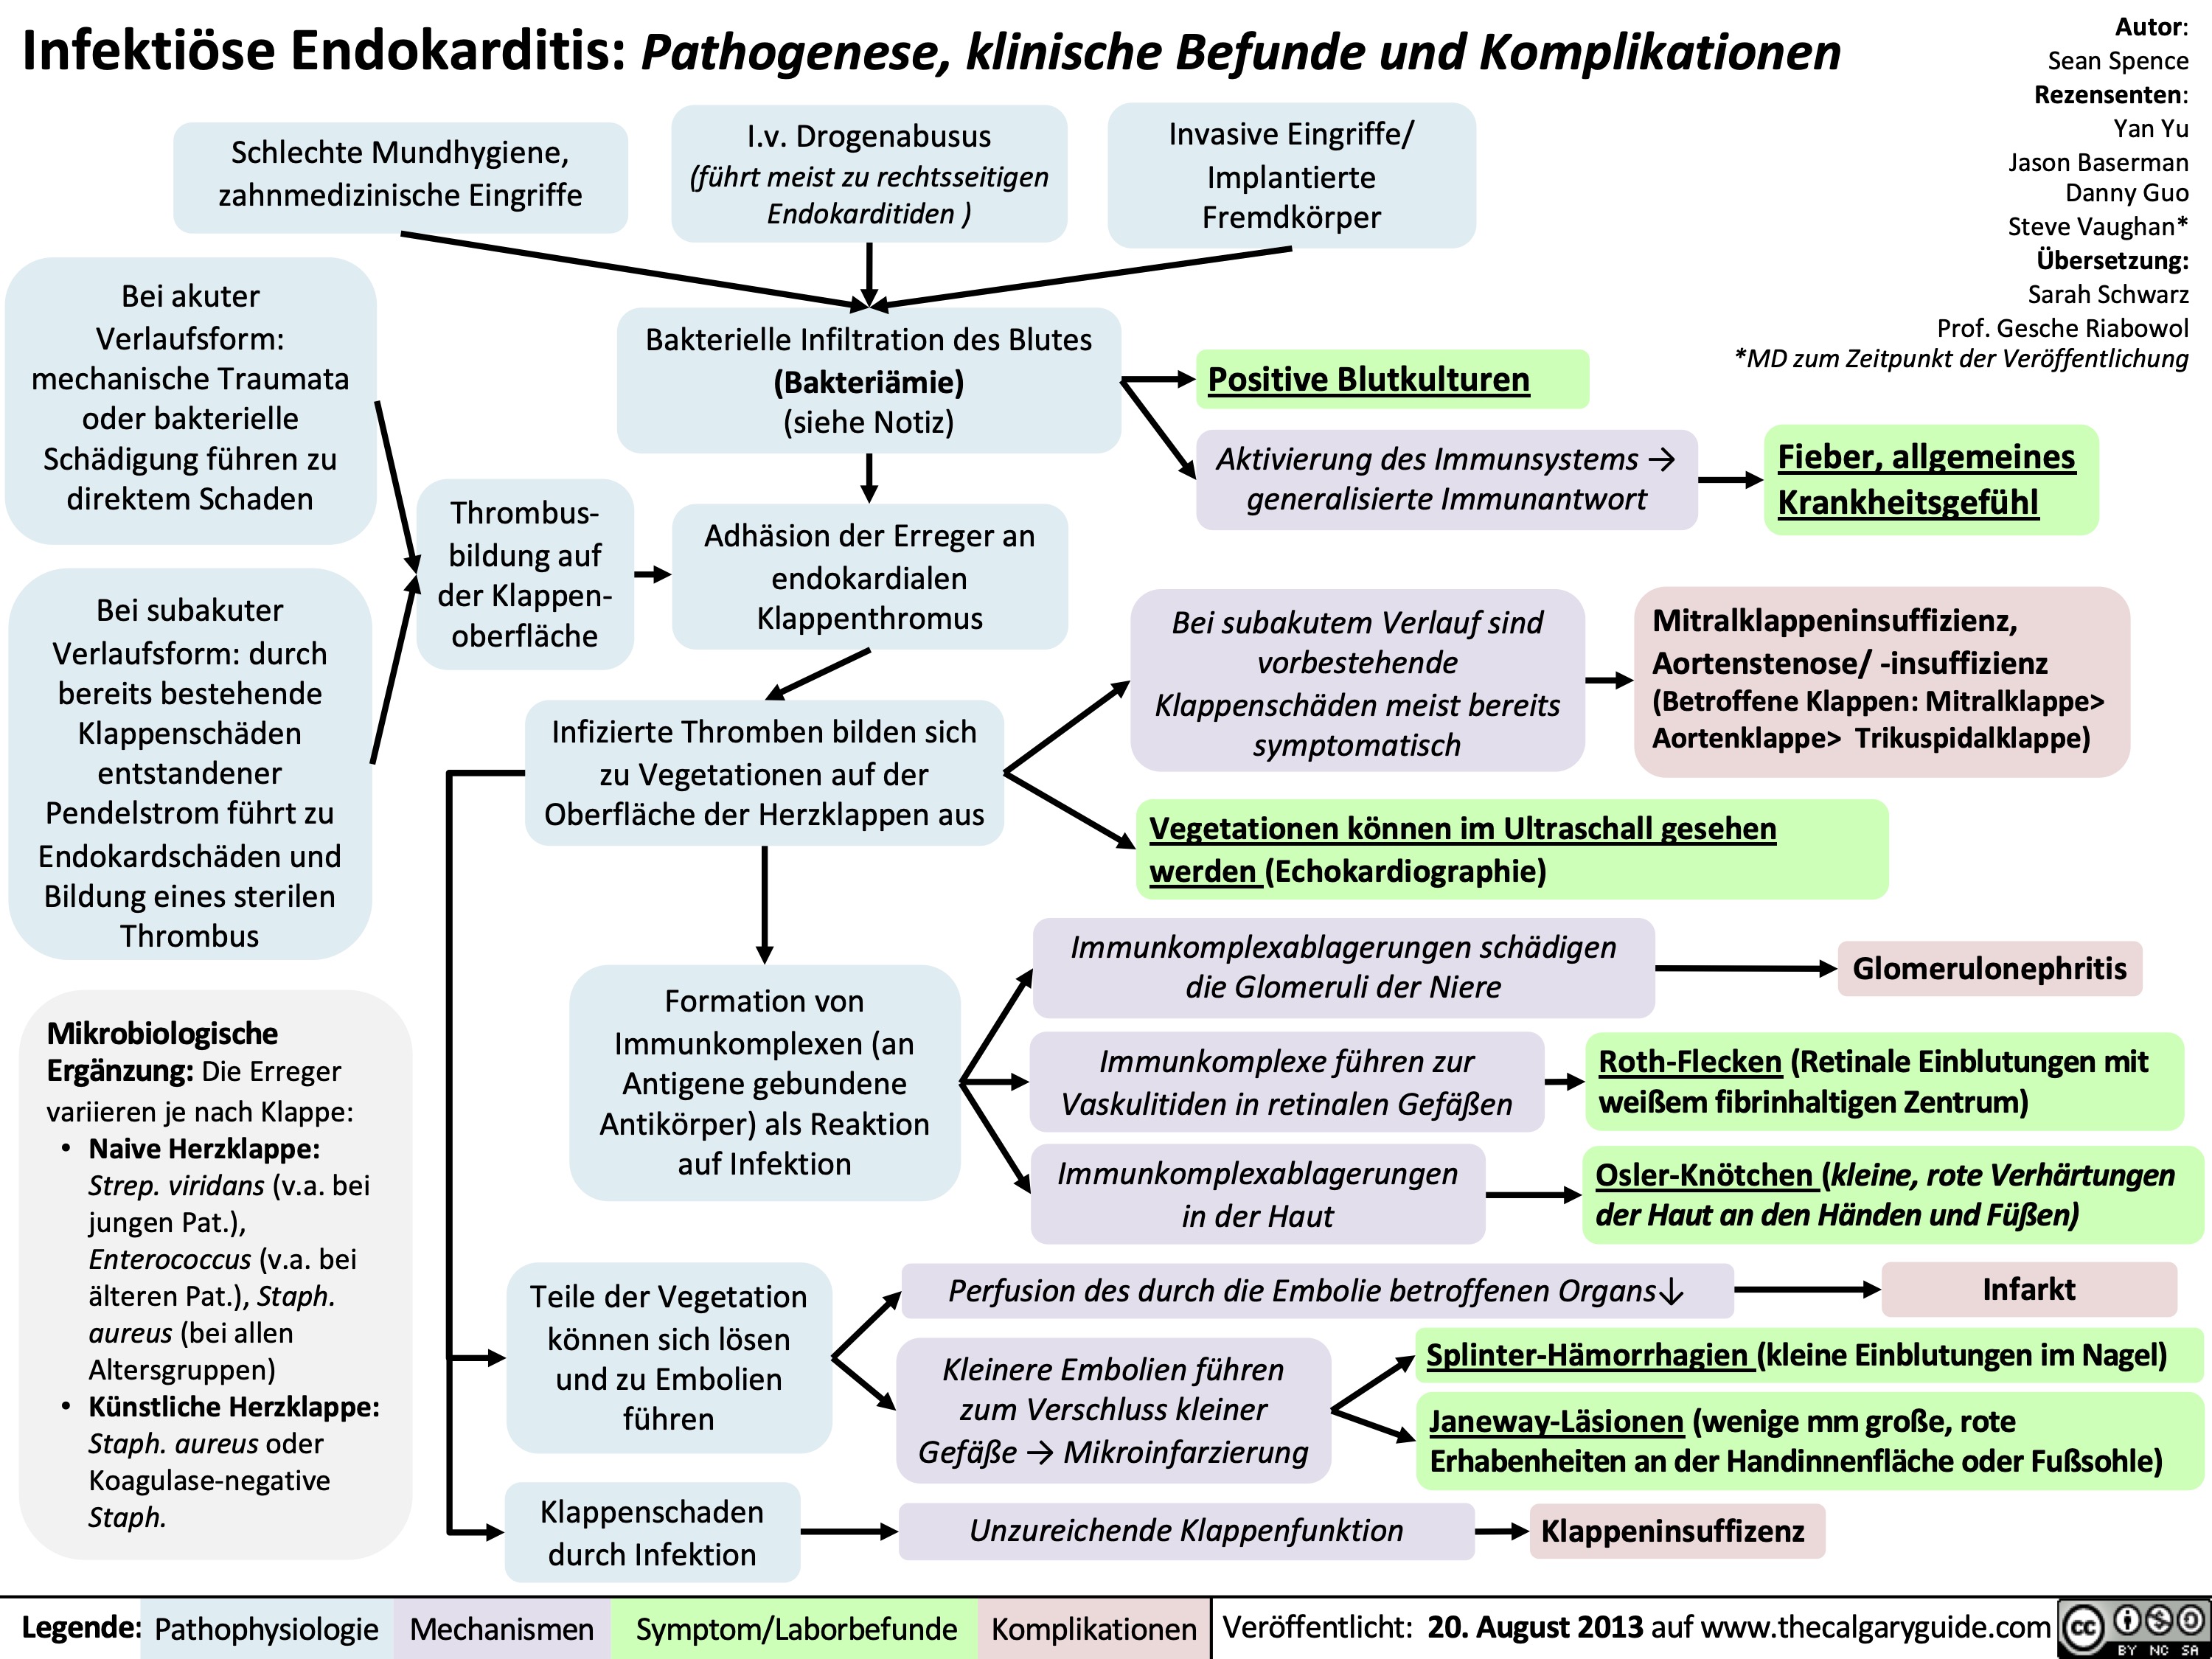 Infektiöse Endokarditis: Pathogenese, klinische Befunde und Komplikationen